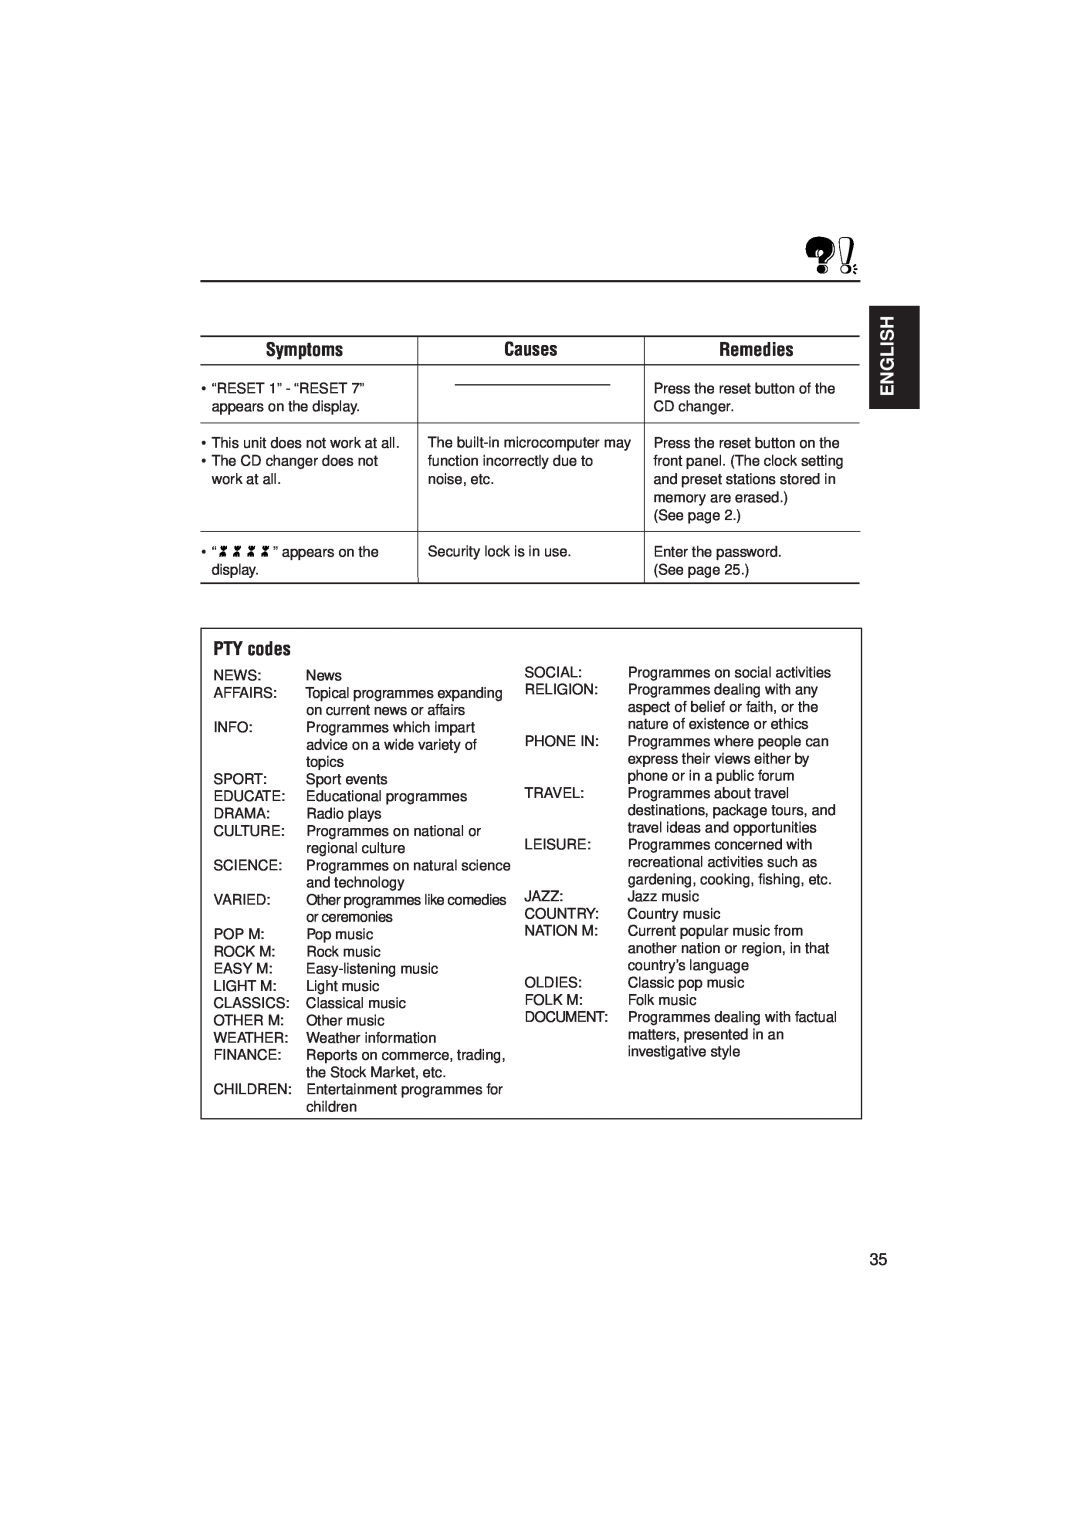 JVC KS-LX200R manual Symptoms, Causes, Remedies, English, PTY codes 